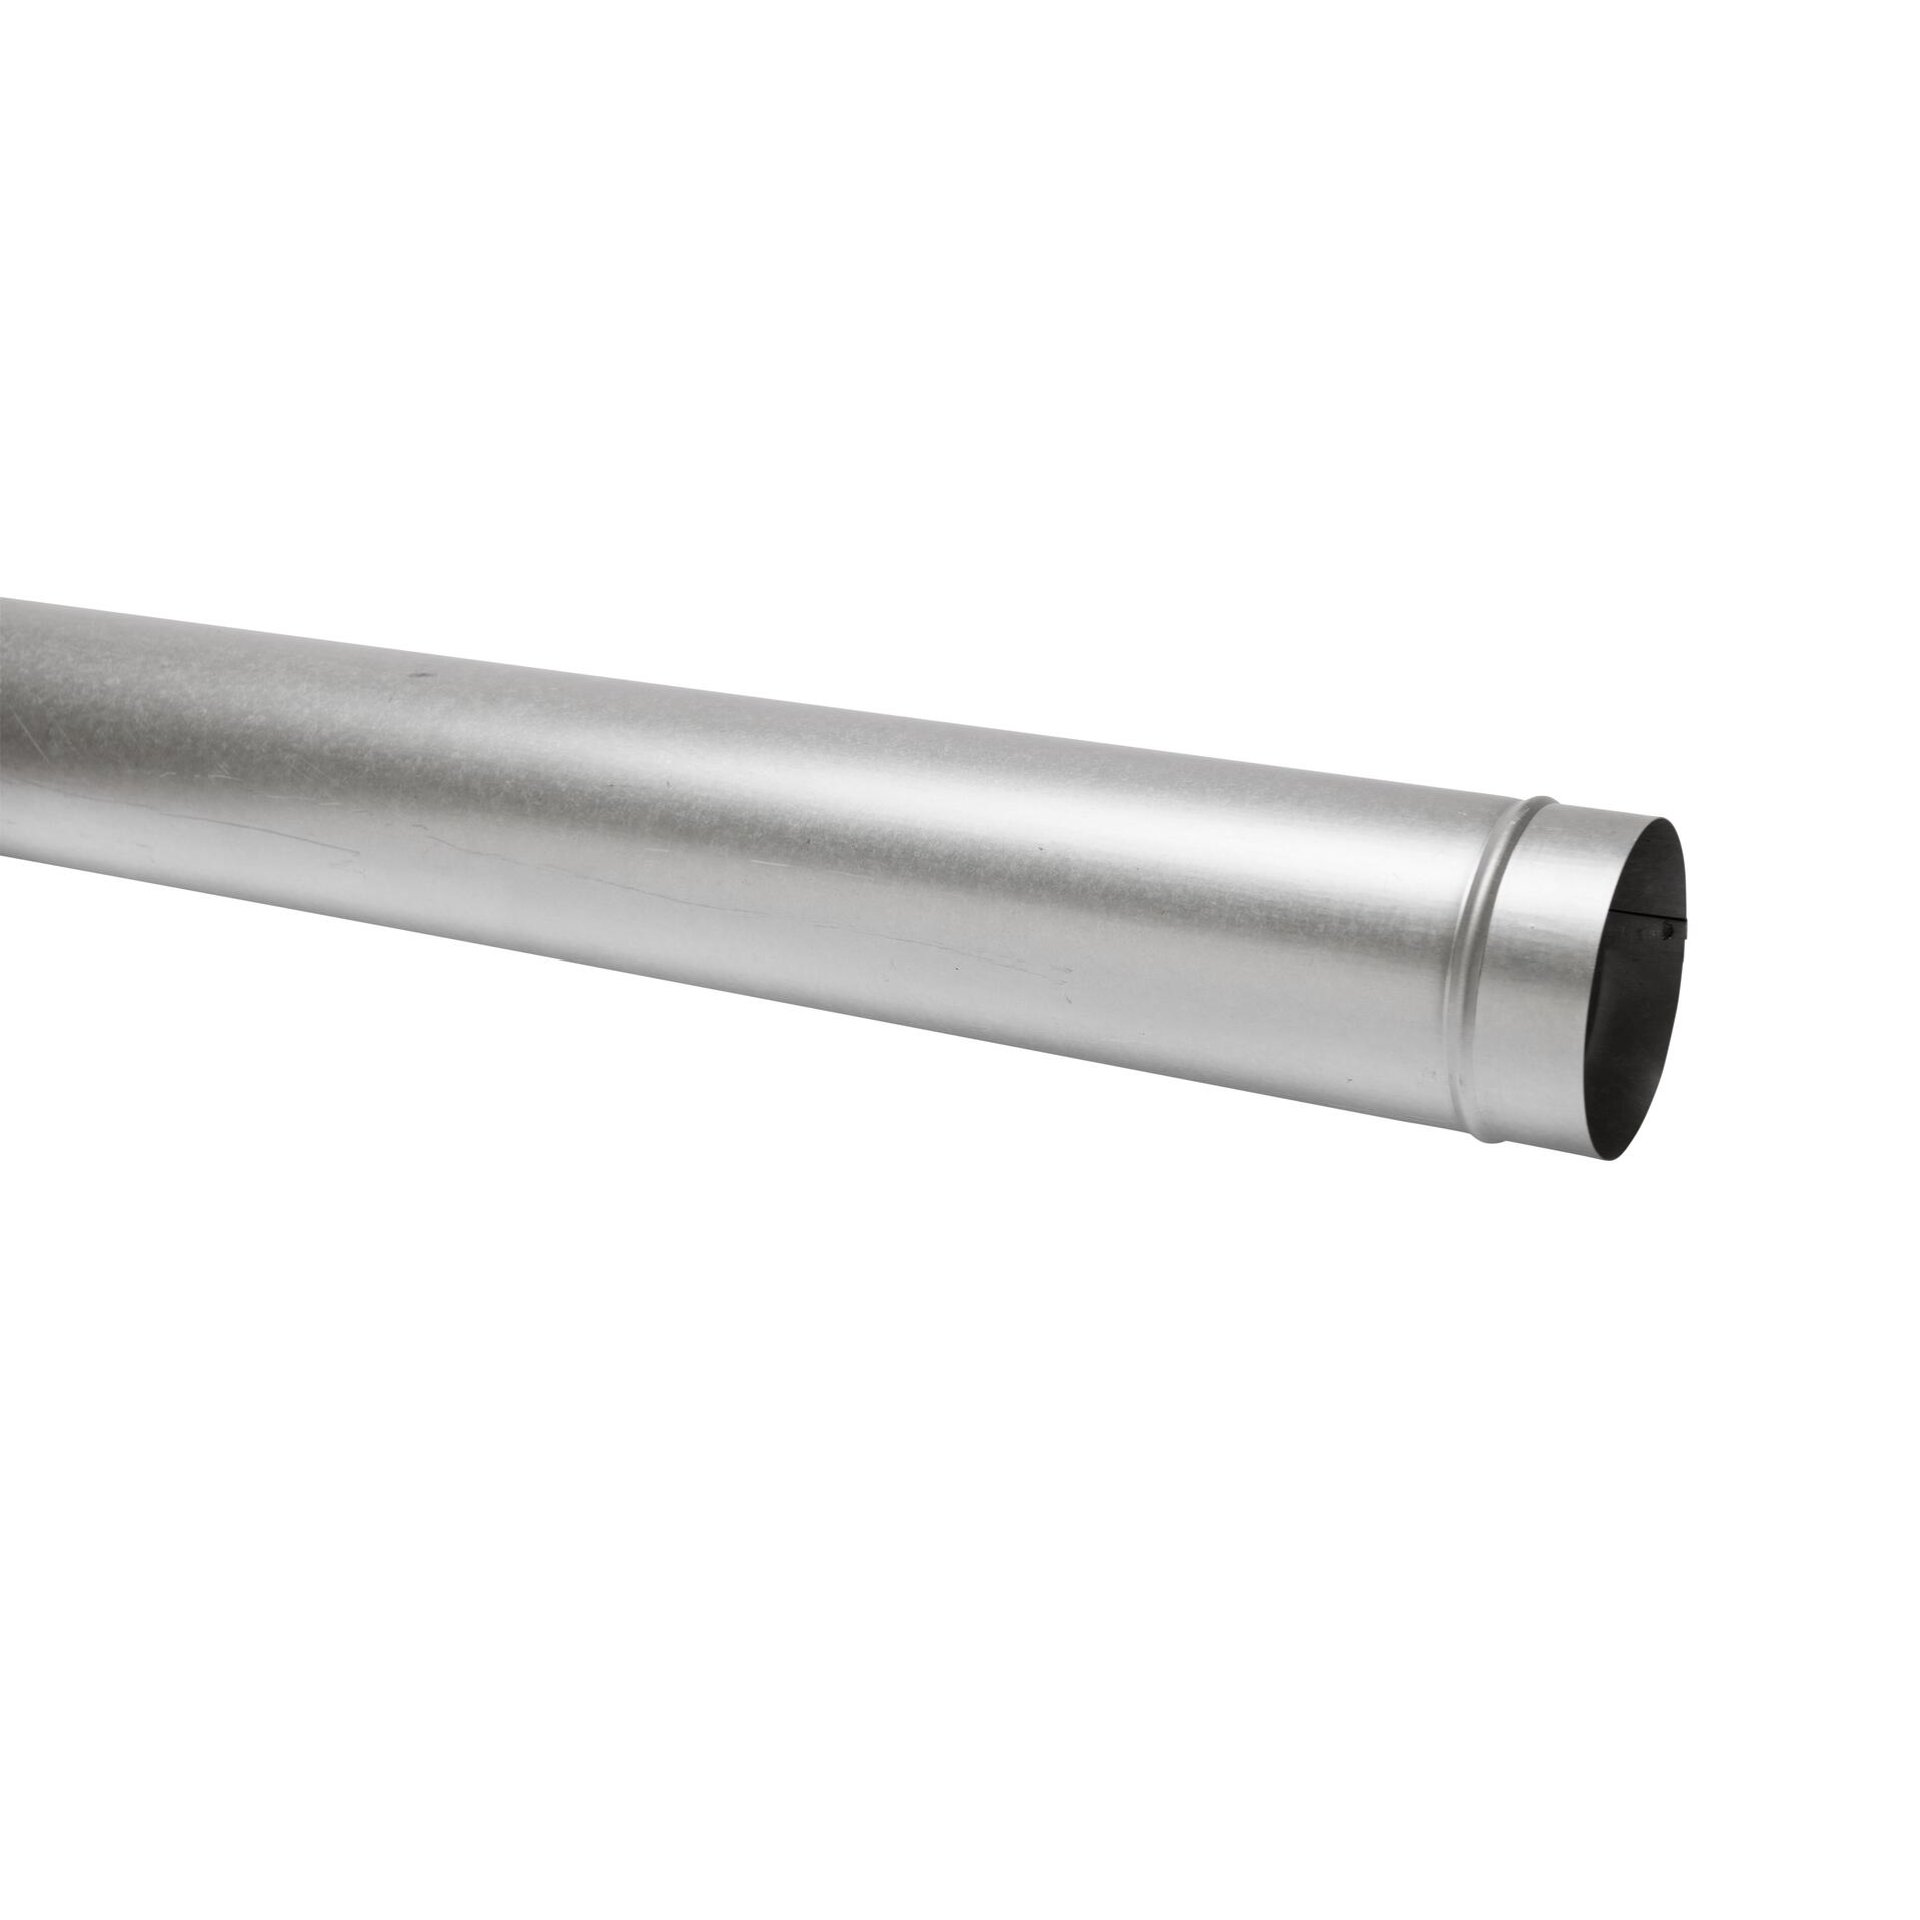 Abgasrohr Stahlblech feueraluminiert 1,0 m lang, 150 mm Ø